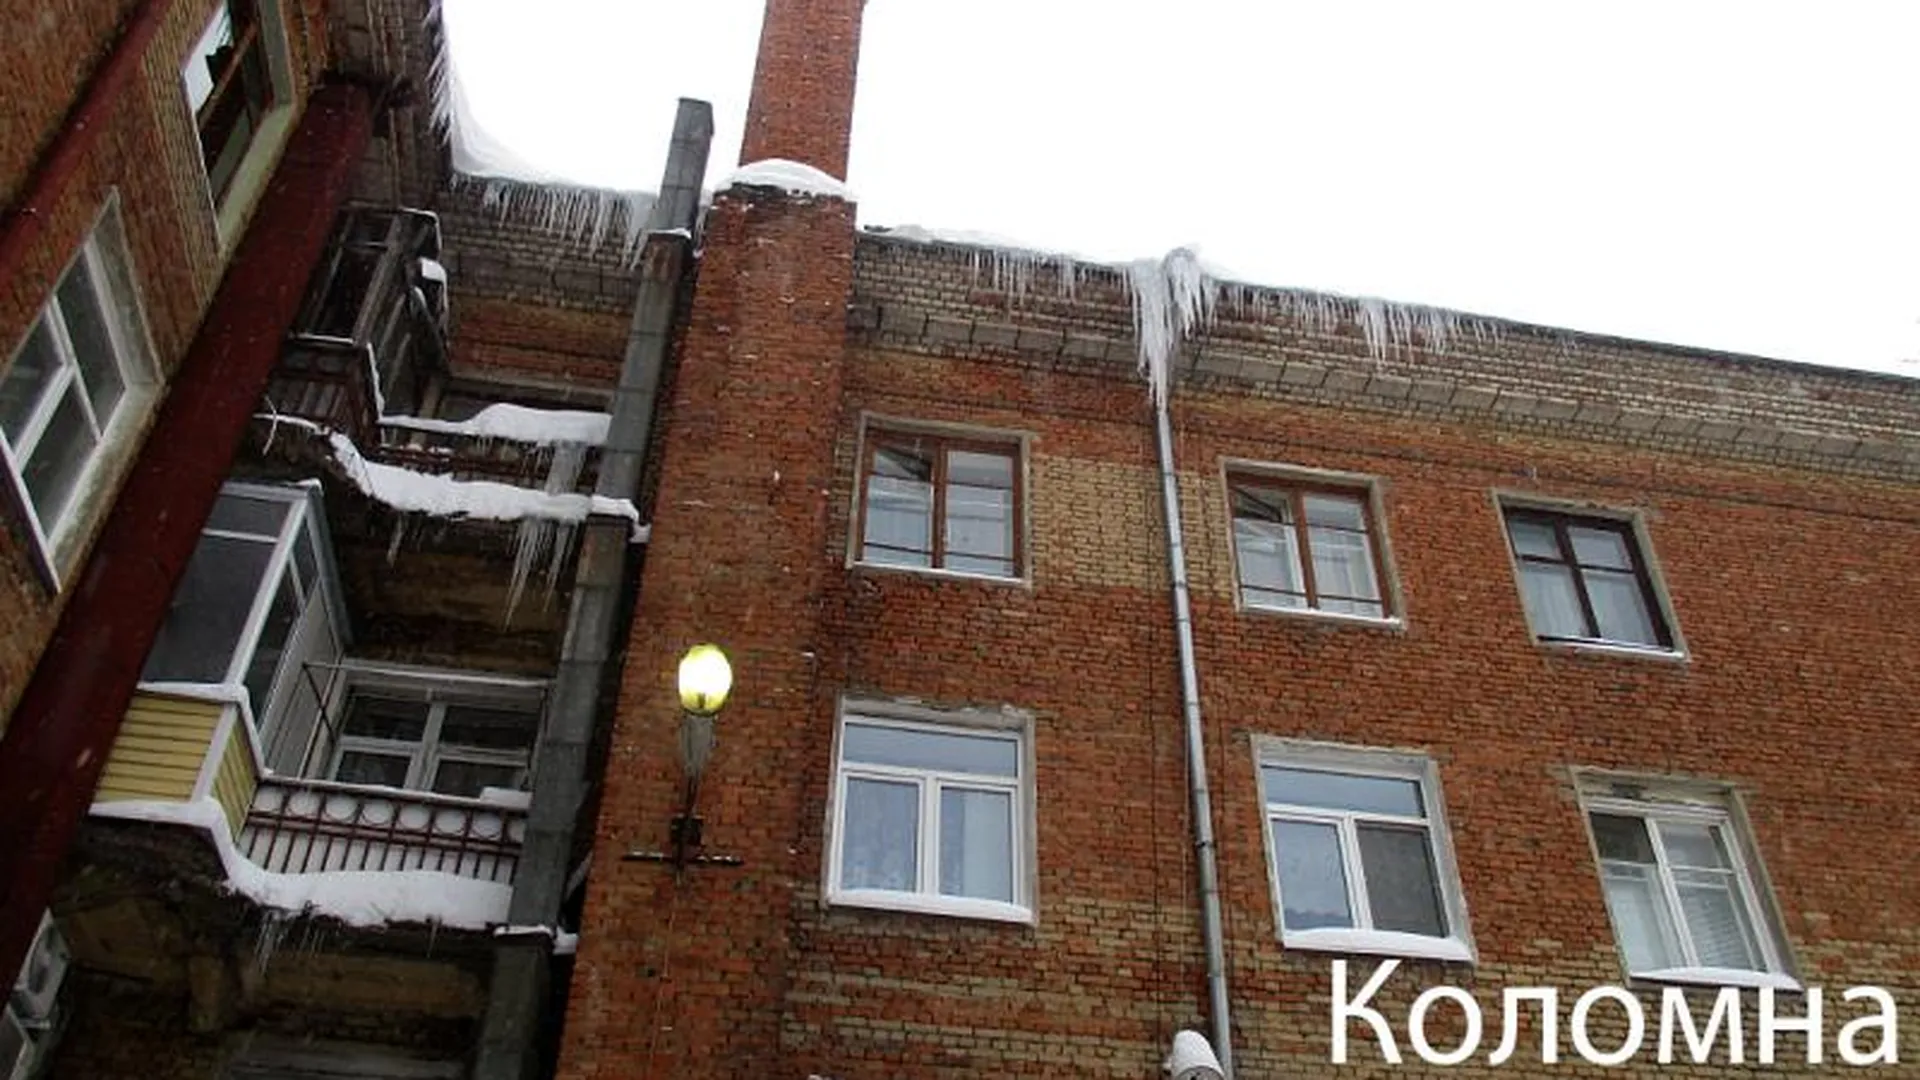 УК во Власихе и Коломне заставили очистить дома от сосулек